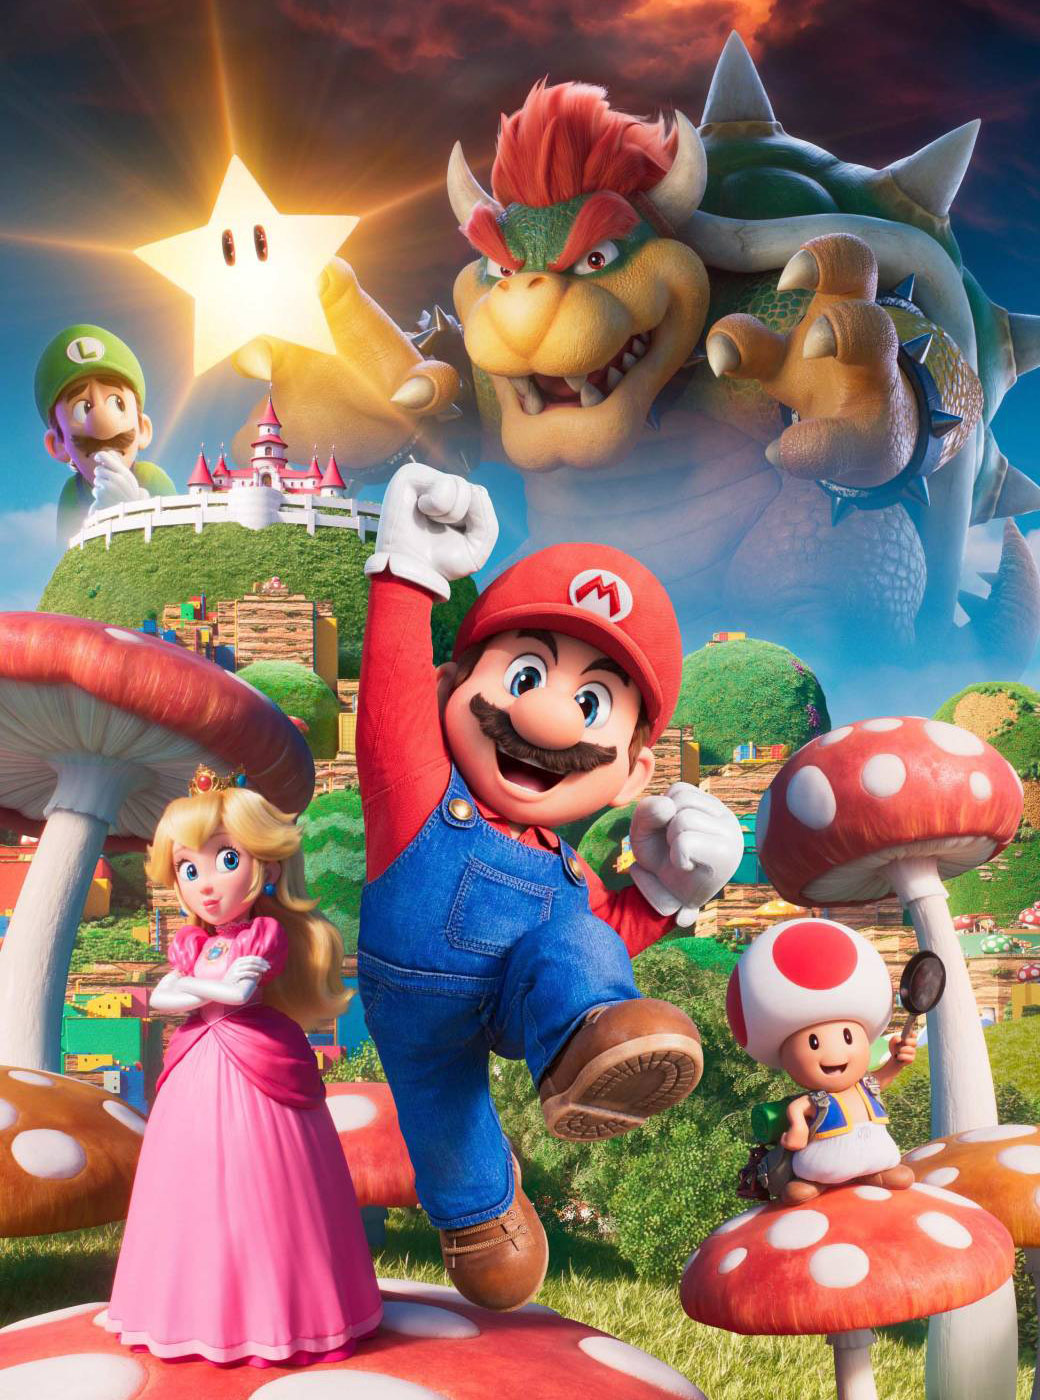 Mario mostra lado violento em jogo de terror criado por fã